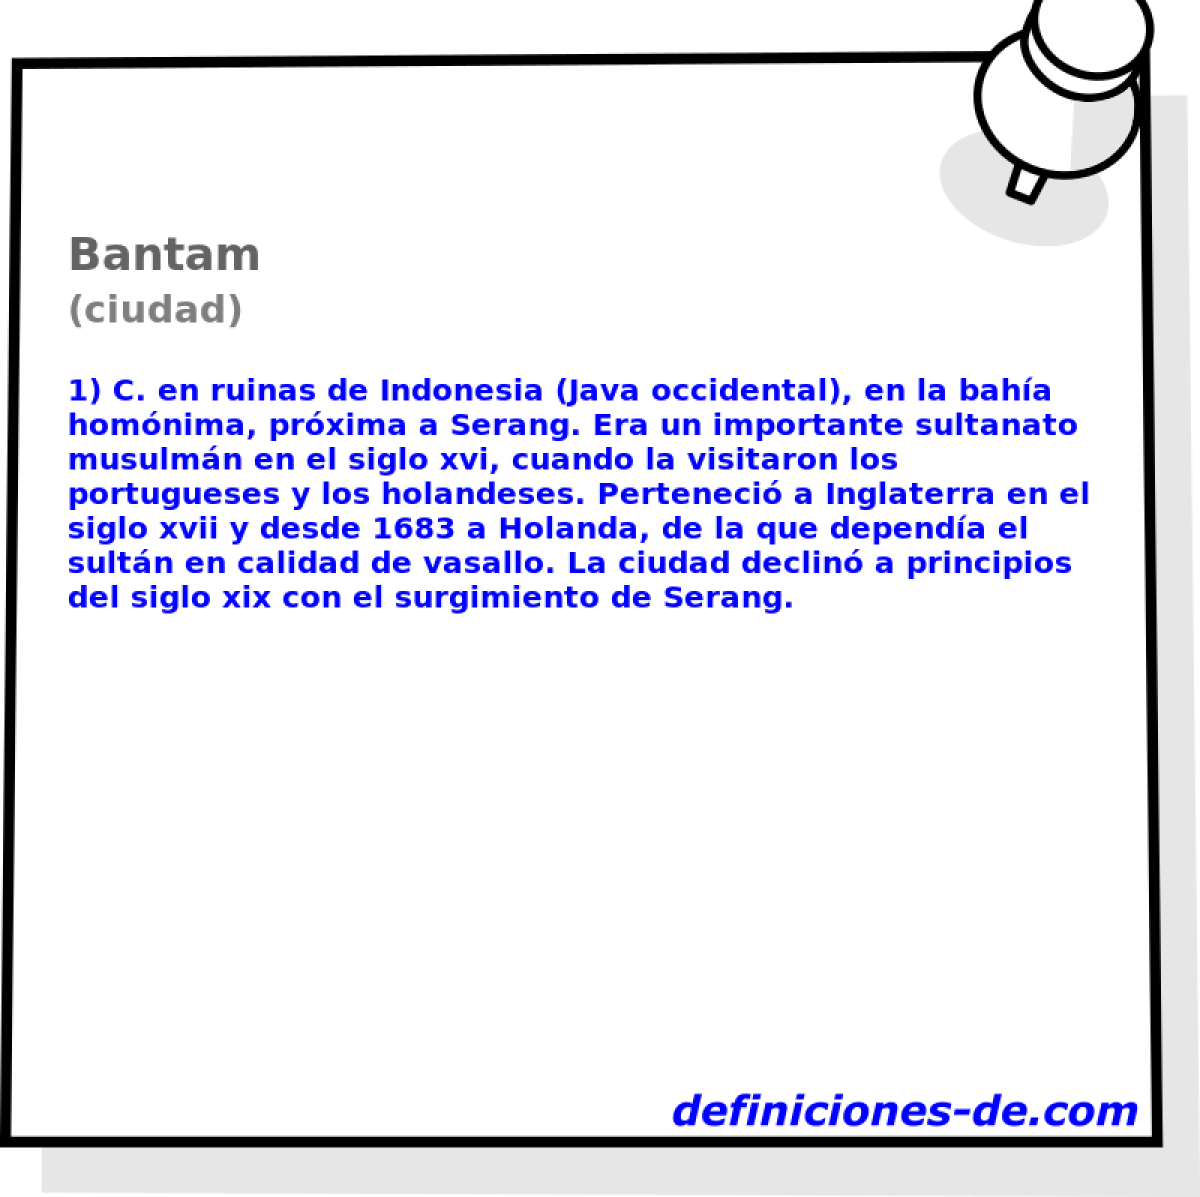 Bantam (ciudad)